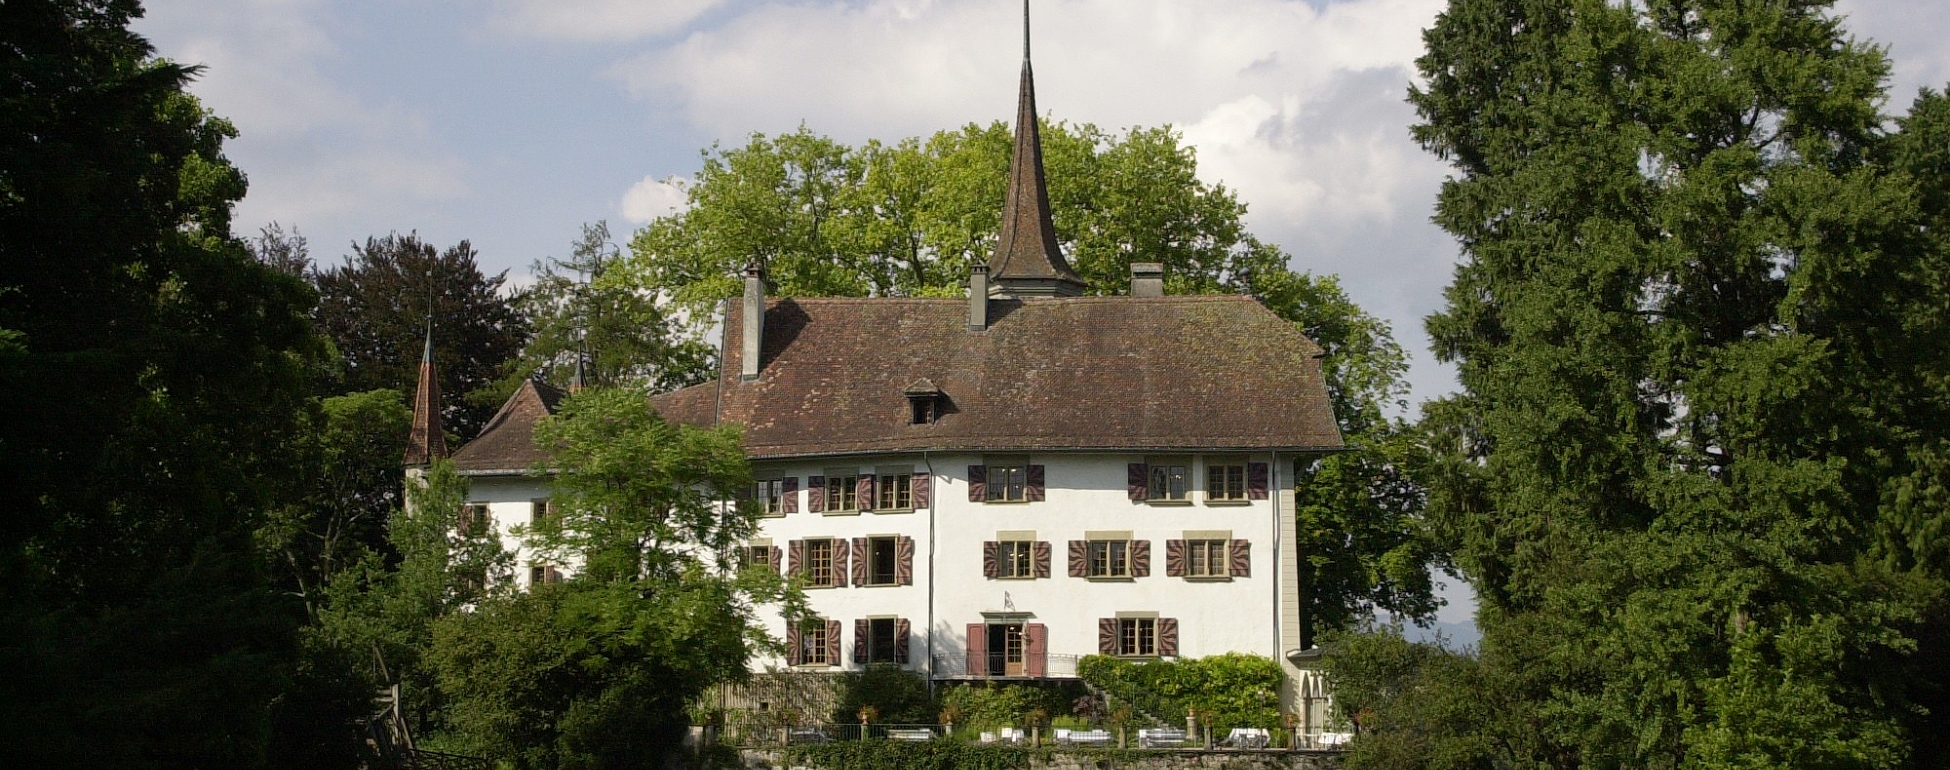 Château de Landshut